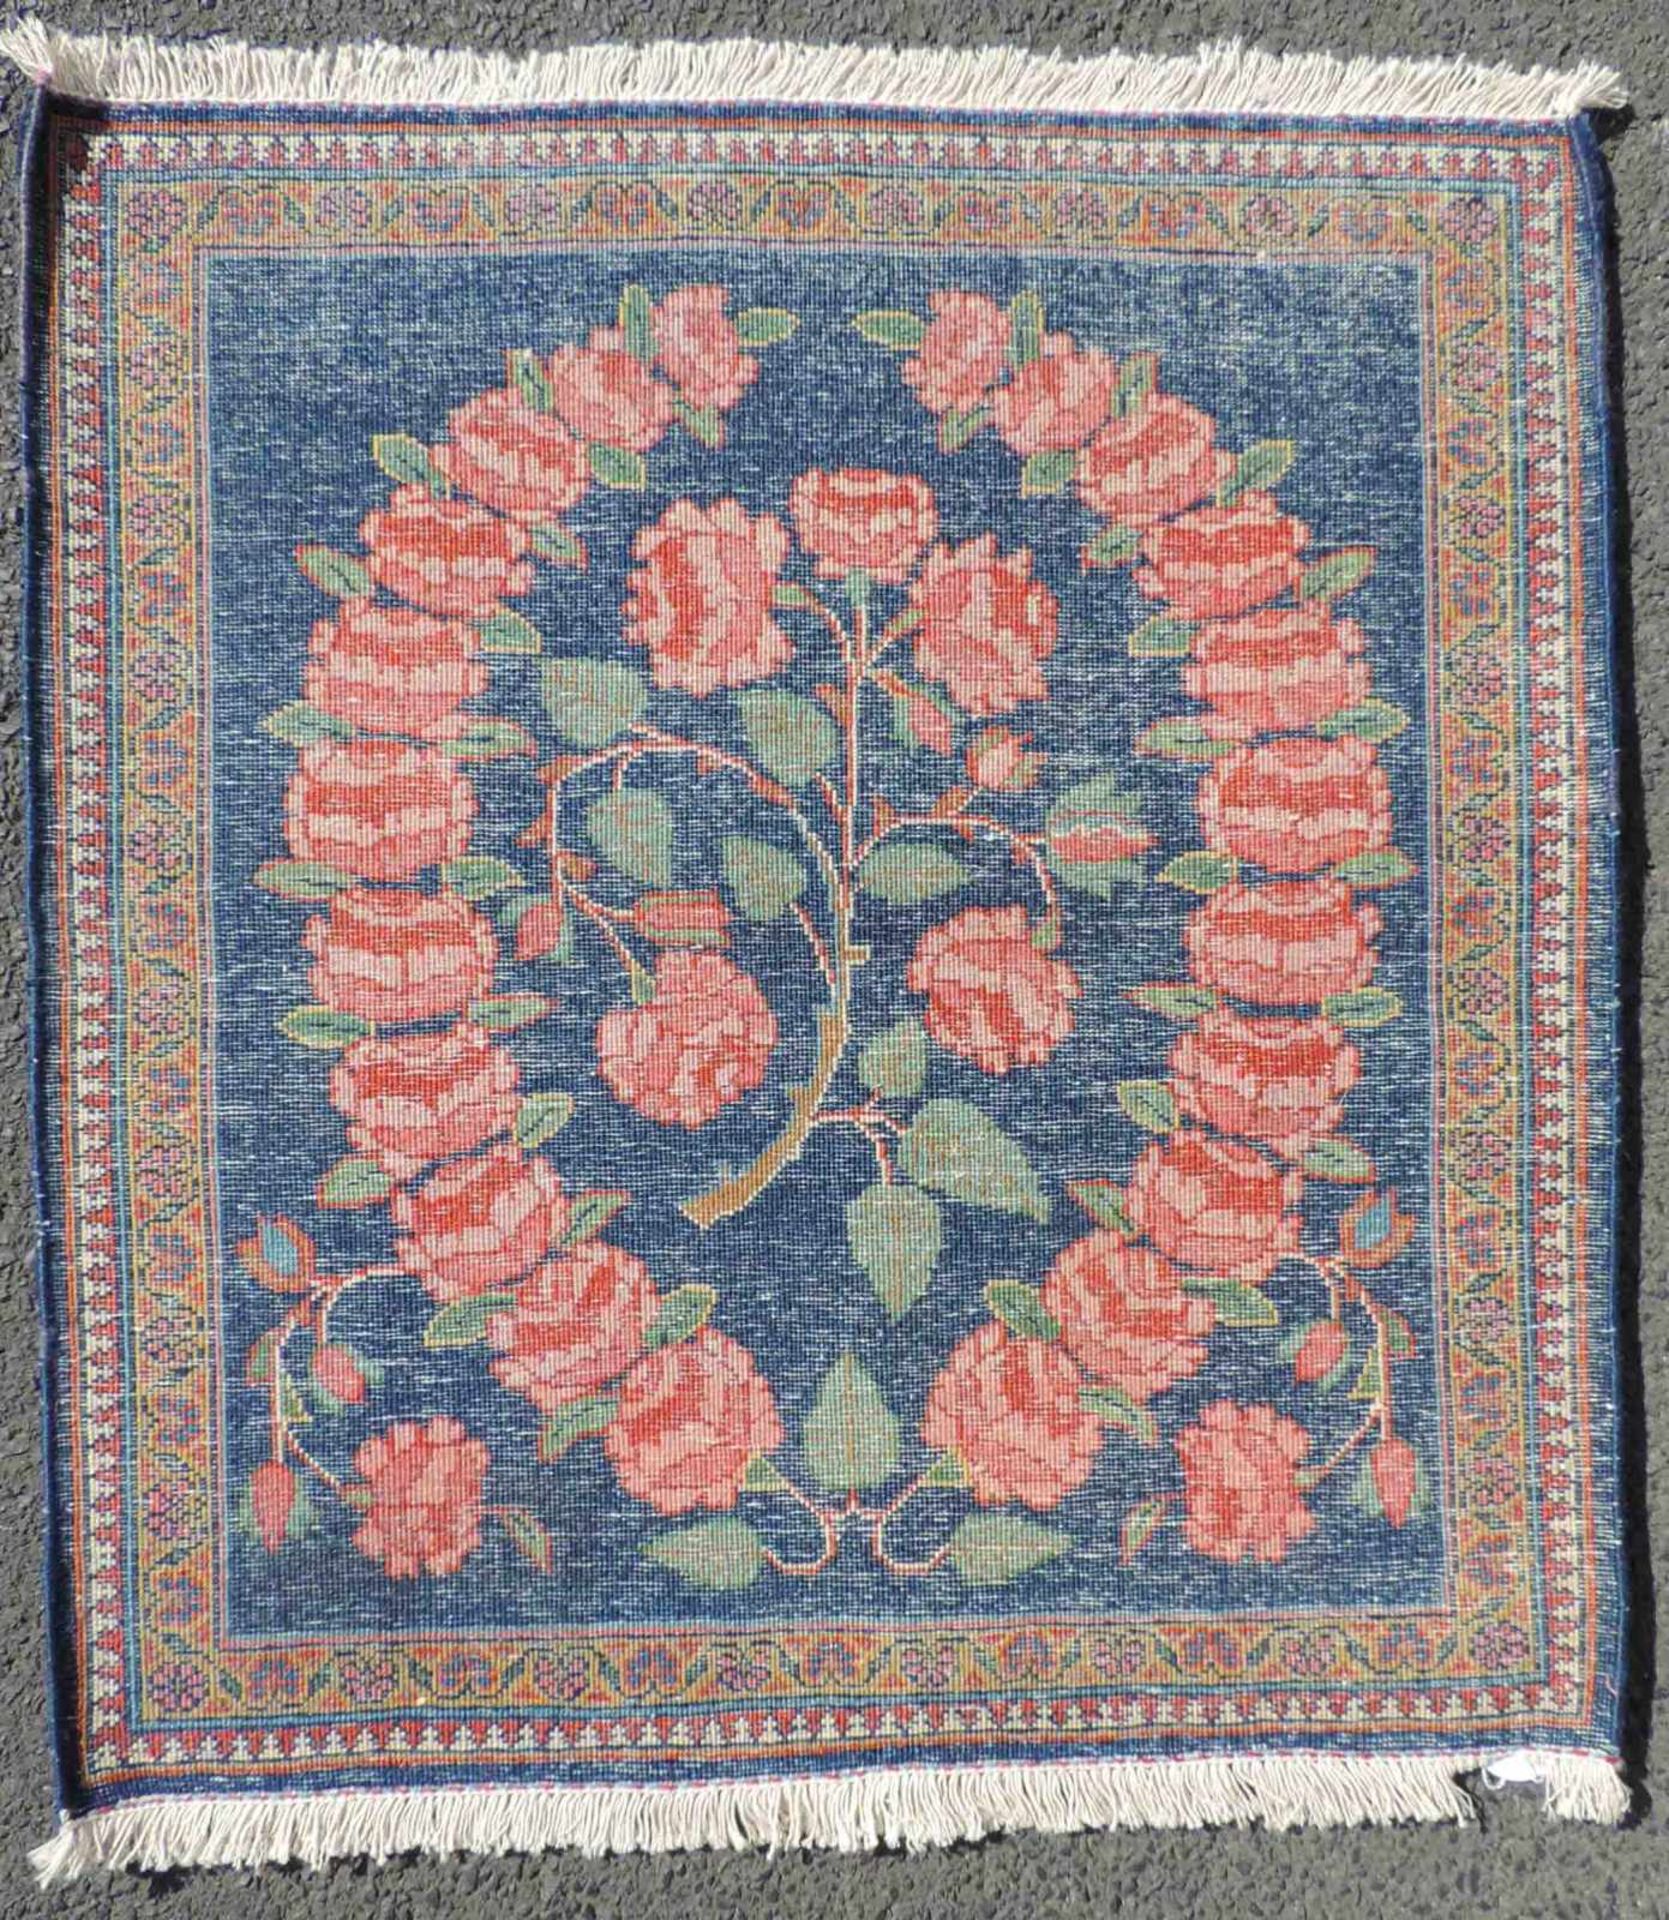 Keschan Poschti Manufakturteppich. Iran, alt, Mitte 20. Jahrhundert. 61 cm x 56 cm. Handgeknüpft. - Bild 2 aus 3